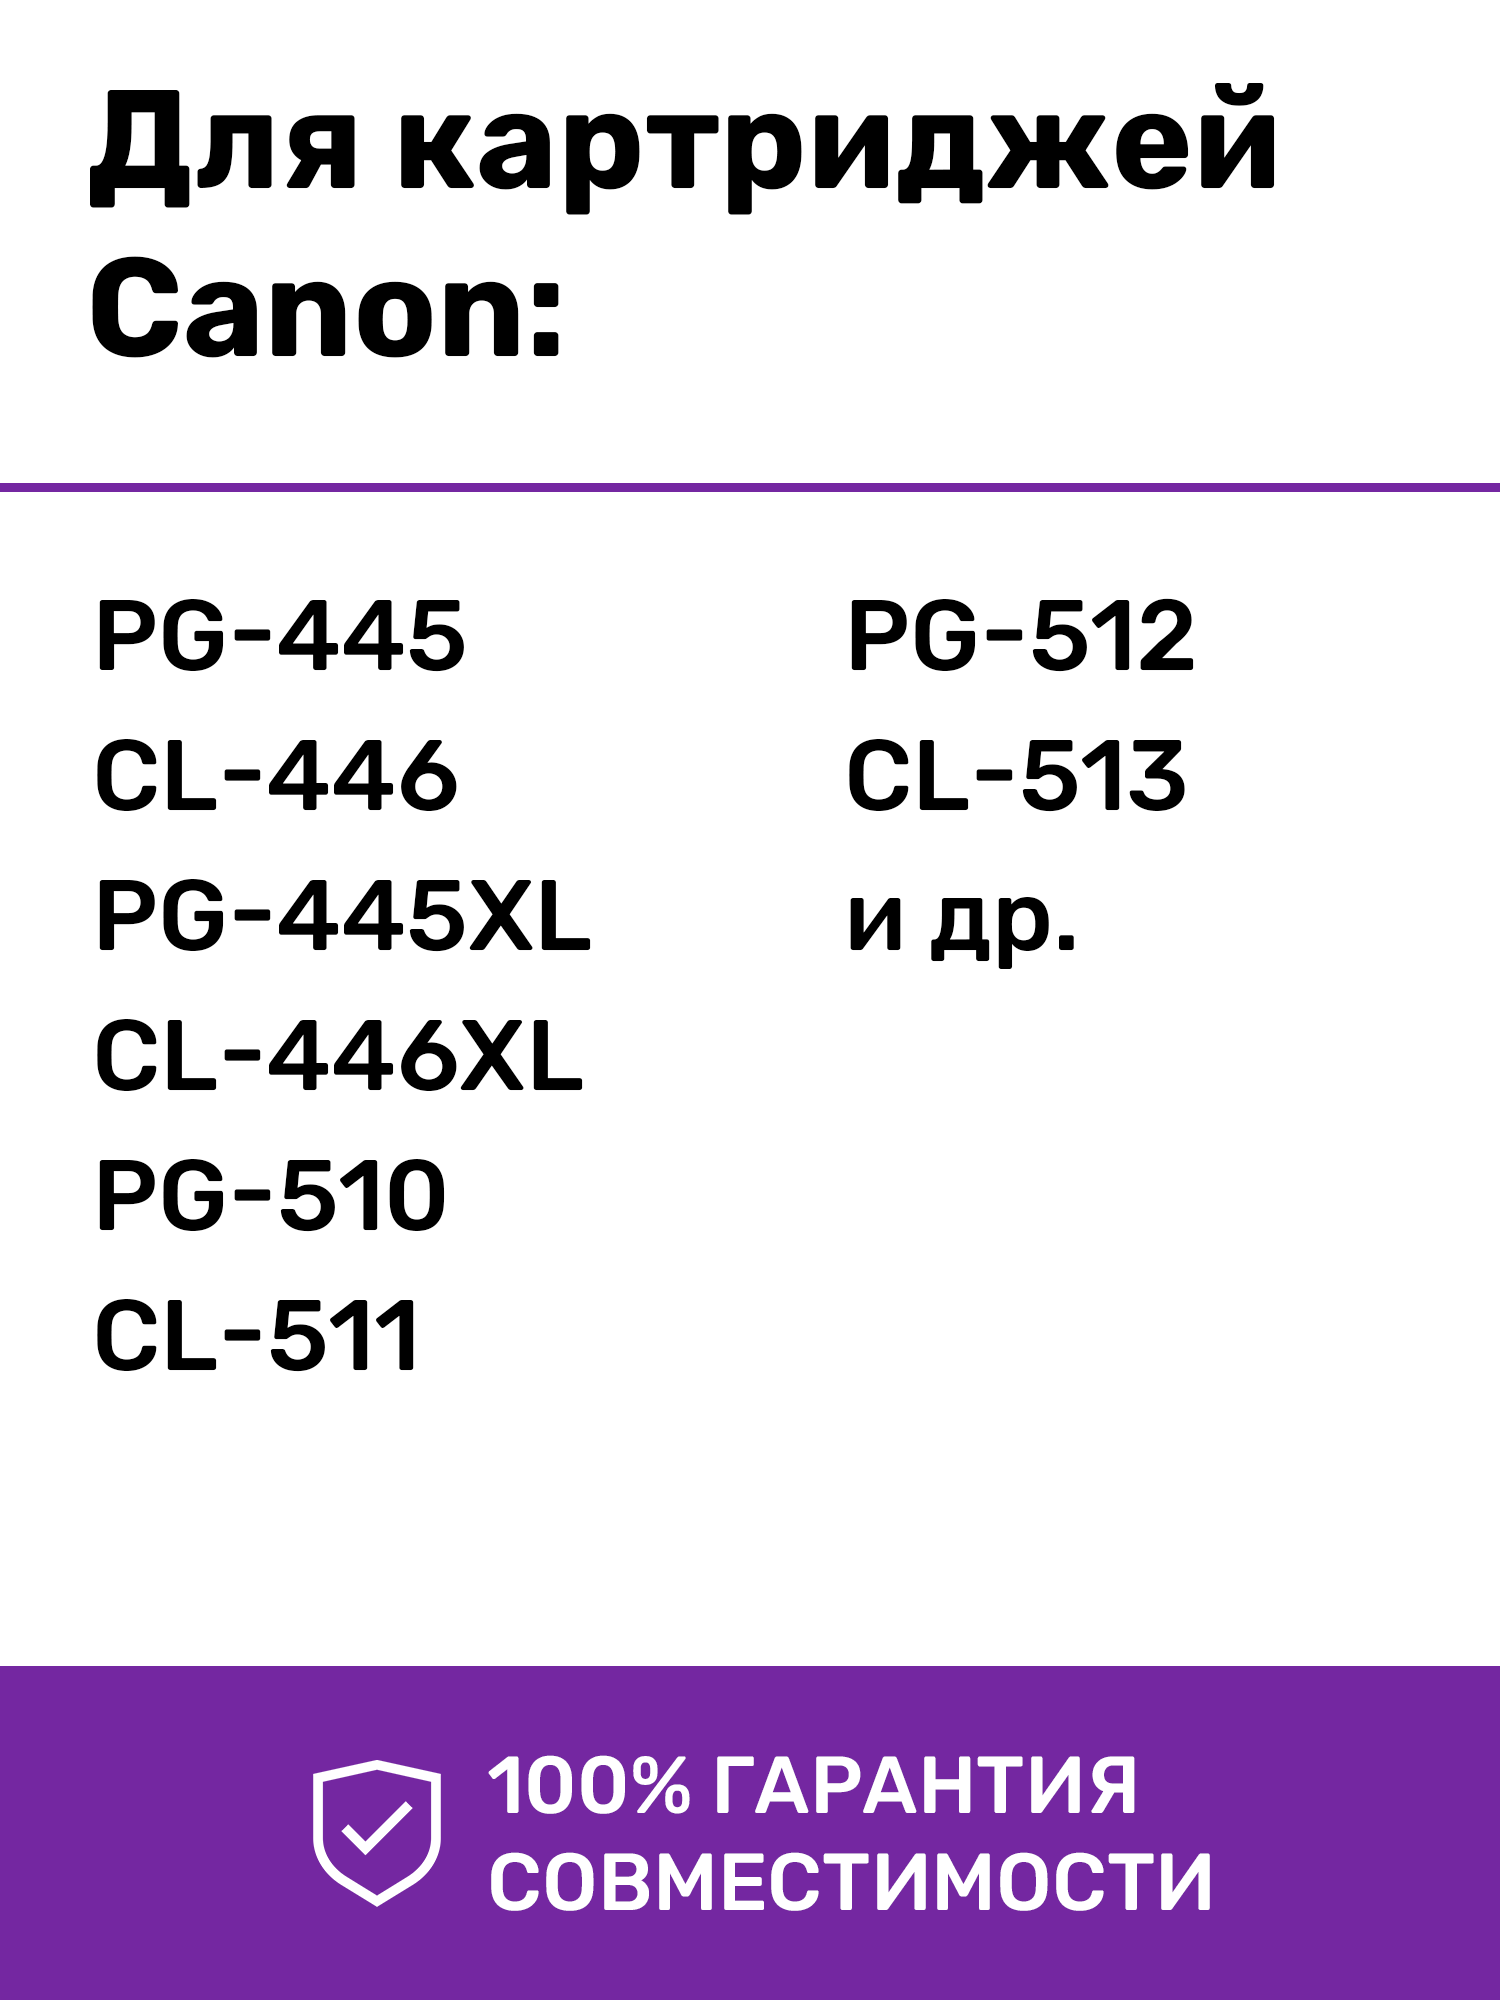 СНПЧ-КОНСТРУКТОР для принтеров Canon, использующих картриджи PG, PG, CL, CL